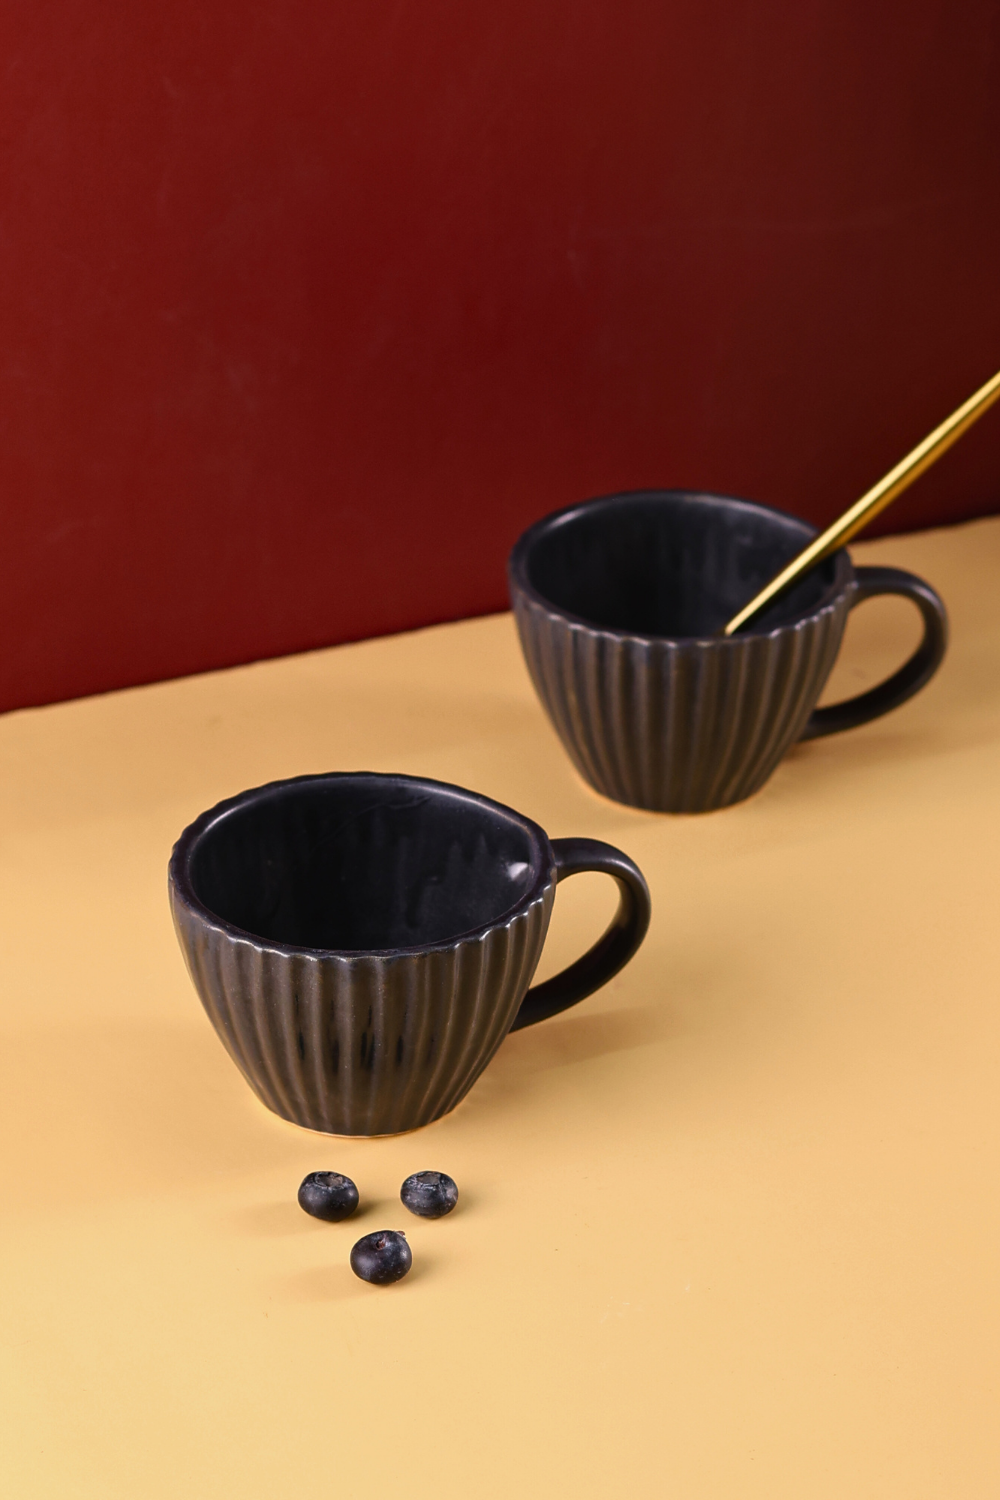 black striped coffee mug